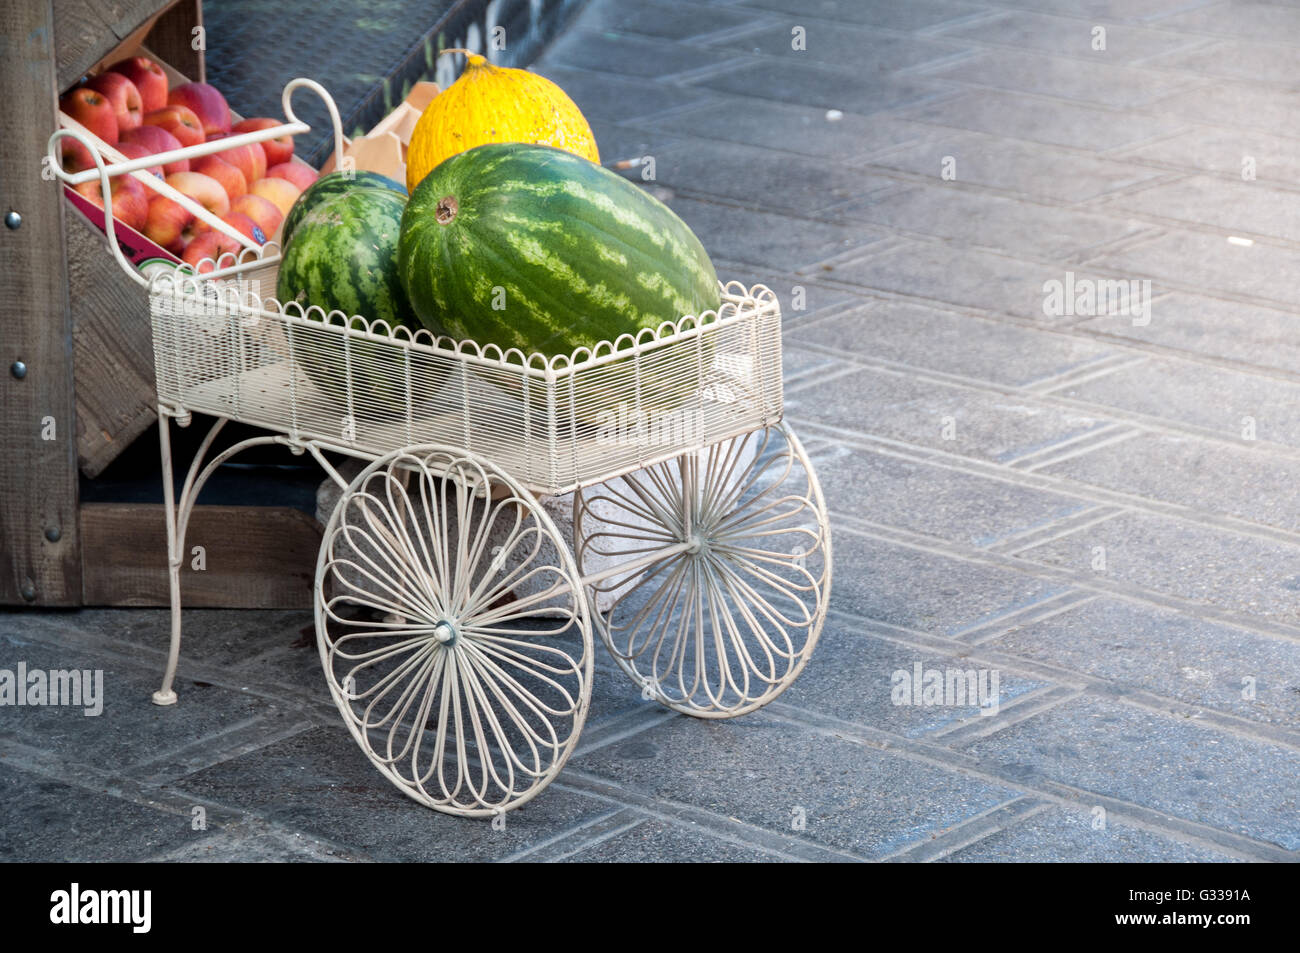 Wassermelonen und Melonen in dekorativen Obstkorb stehen an einem Marktstand in Athen, Griechenland. Stockfoto